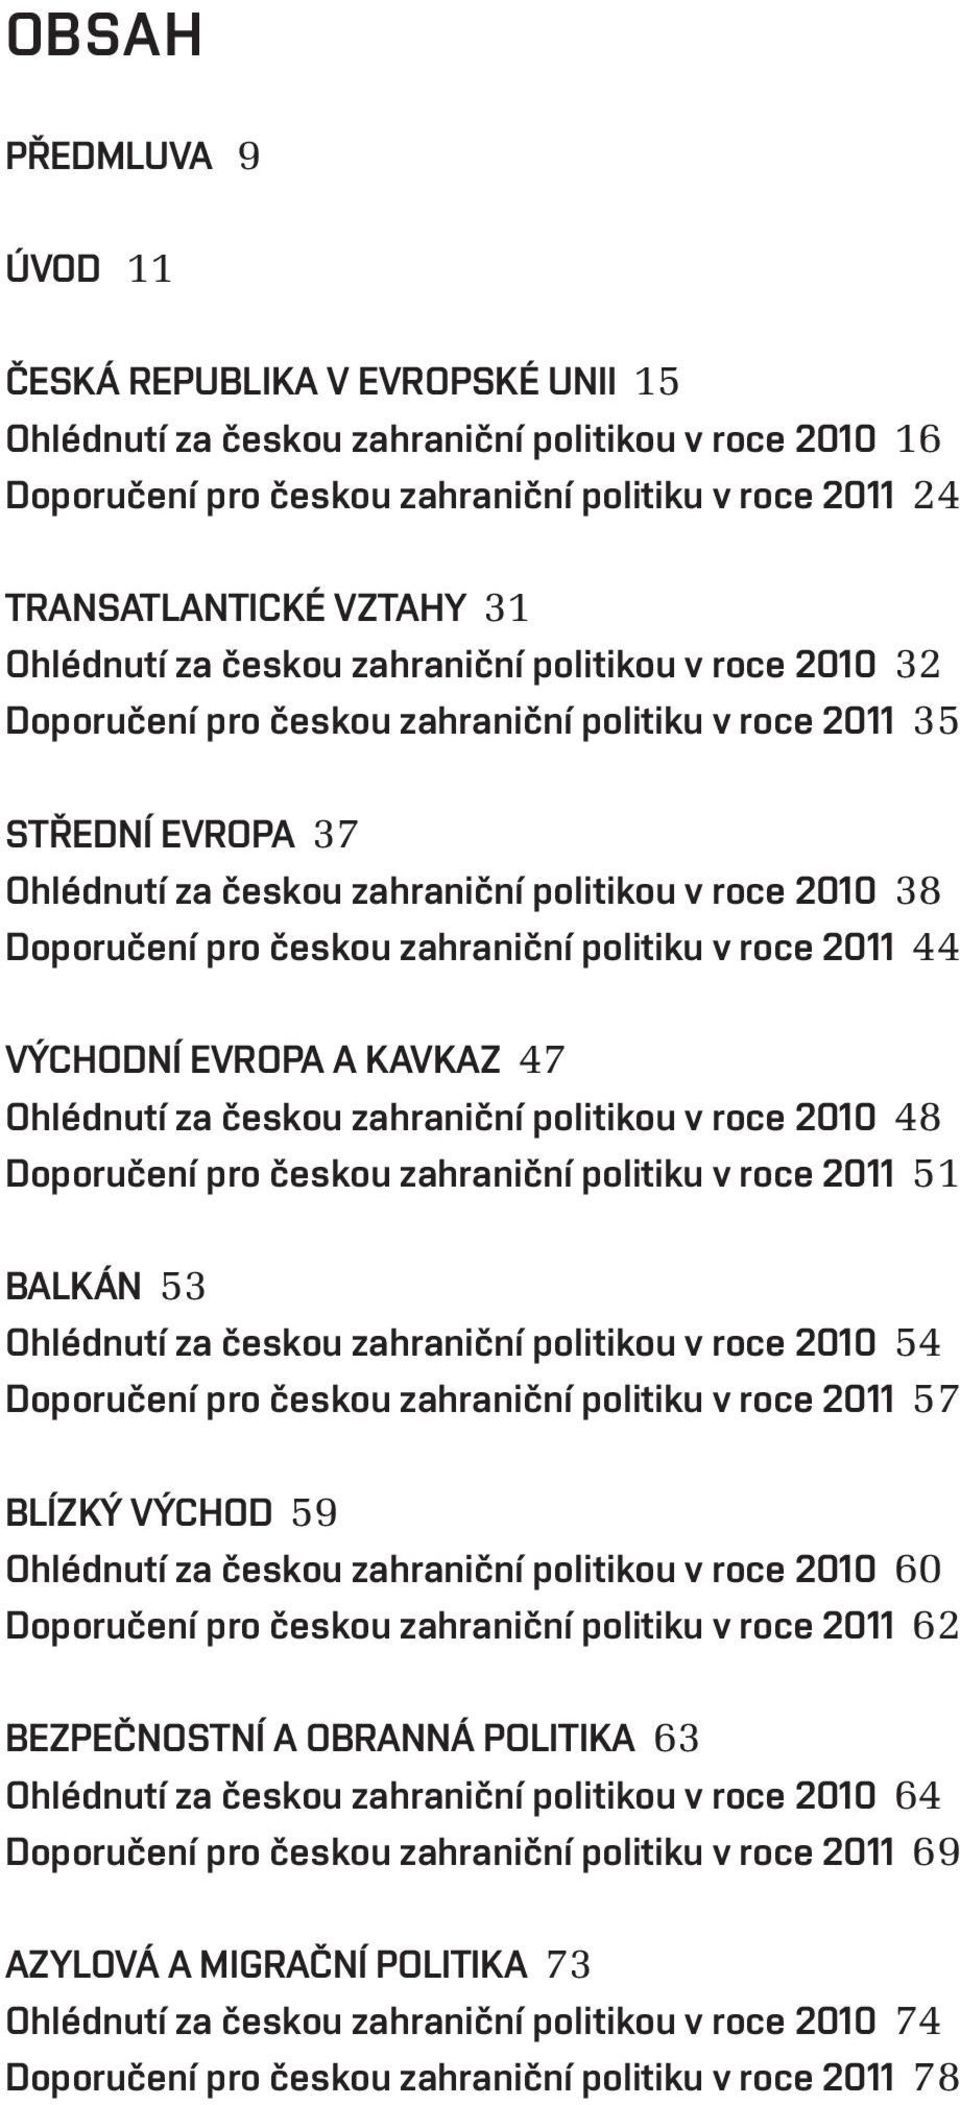 pro českou zahraniční politiku v roce 2011 44 VÝCHODNÍ EVROPA A KAVKAZ 47 Ohlédnutí za českou zahraniční politikou v roce 2010 48 Doporučení pro českou zahraniční politiku v roce 2011 51 BALKÁN 53